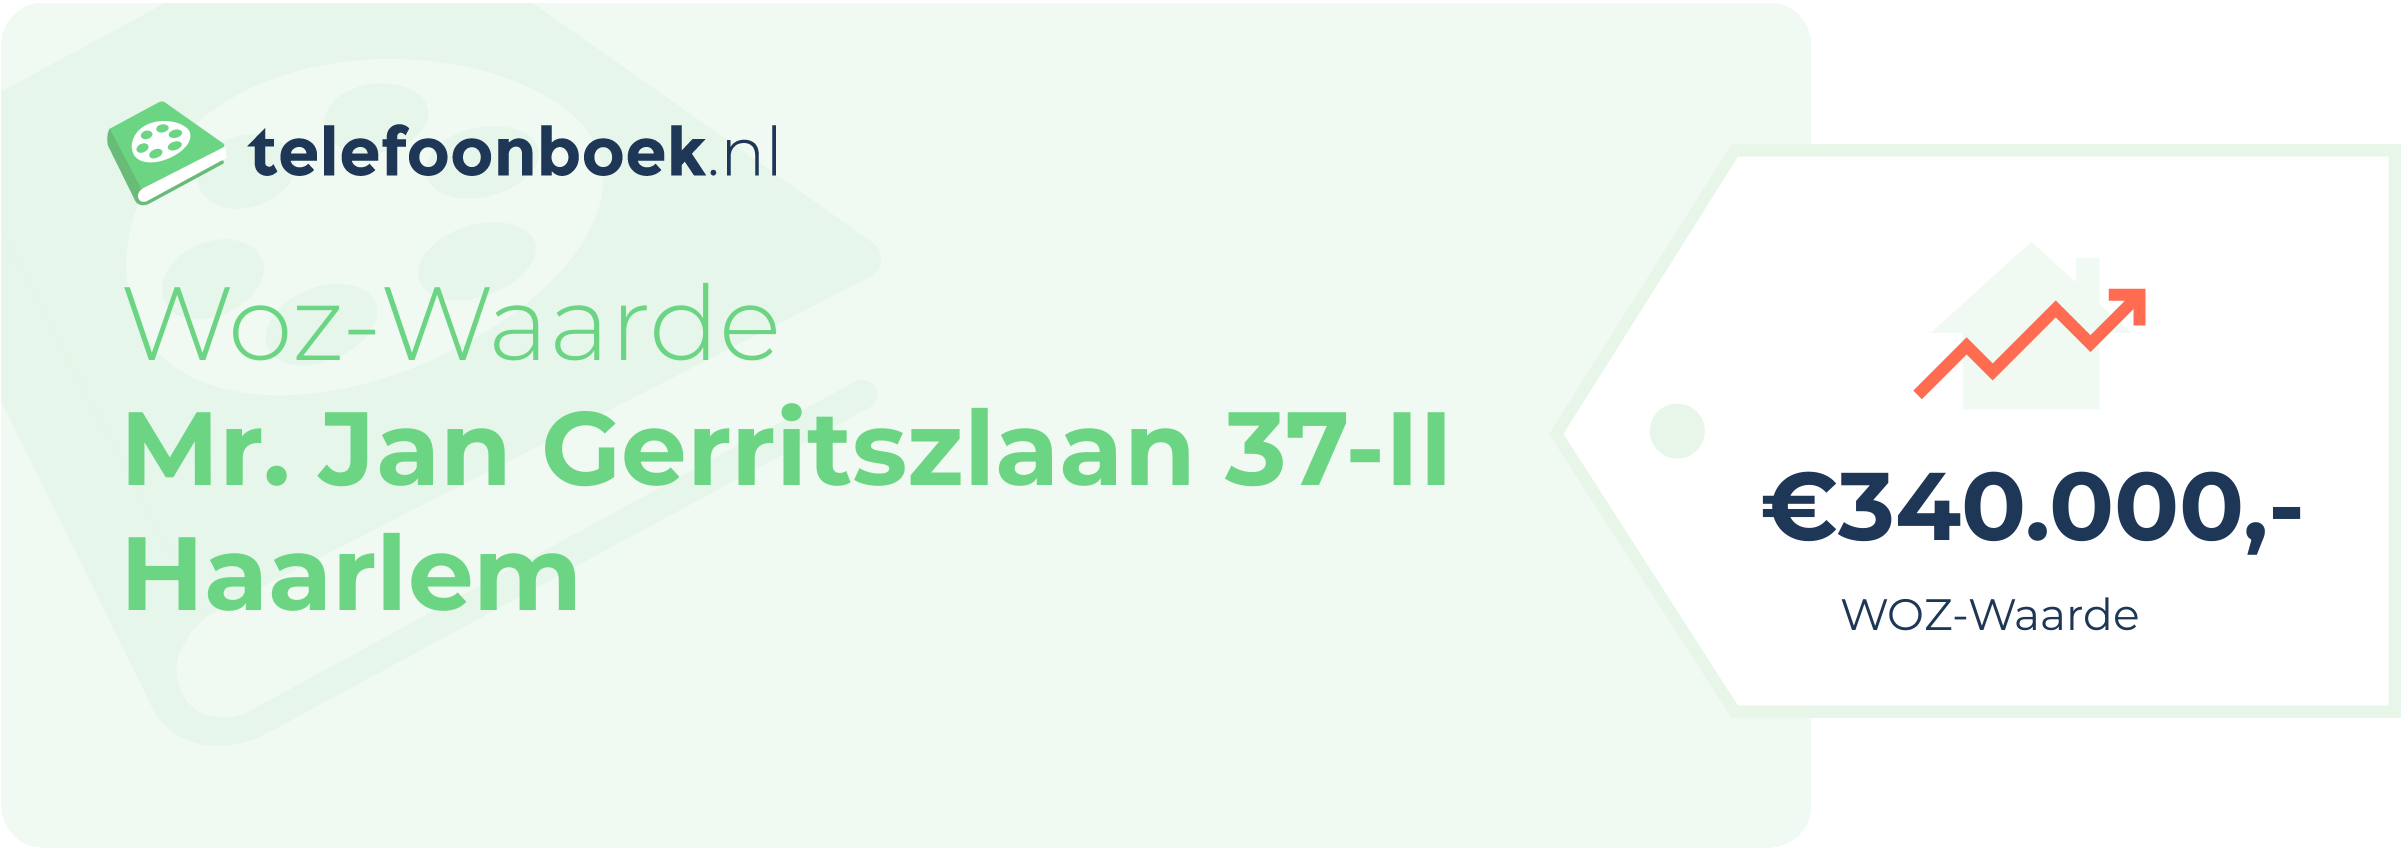 WOZ-waarde Mr. Jan Gerritszlaan 37-II Haarlem